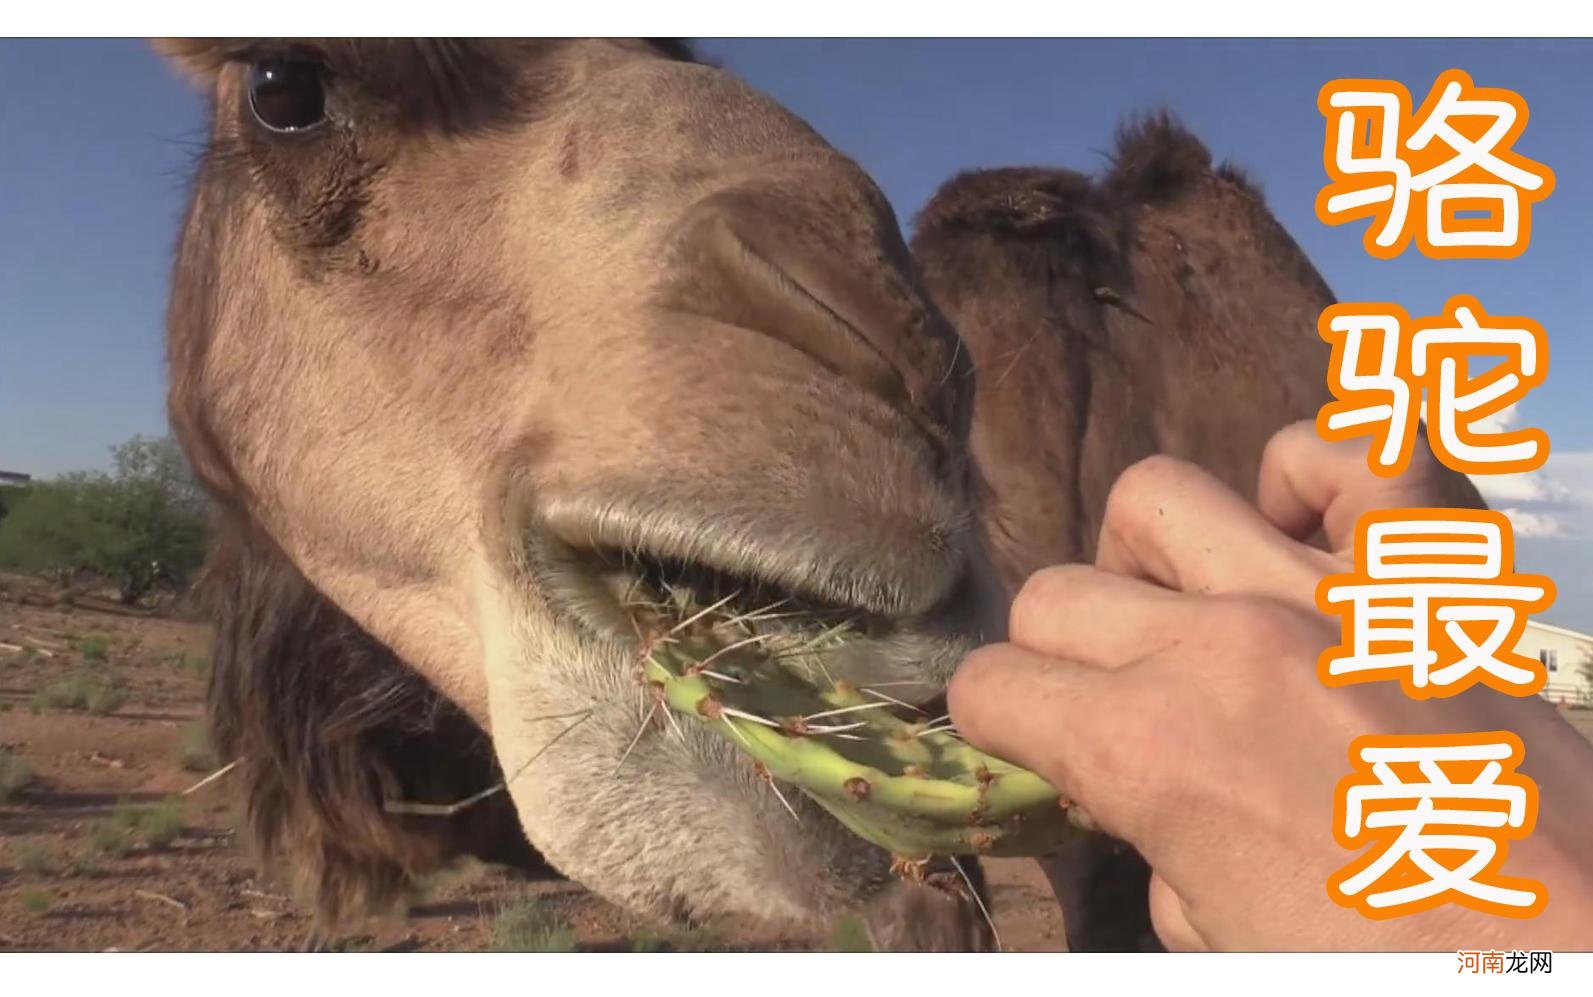 骆驼吃仙人掌为什么不会被刺到 骆驼吃仙人掌